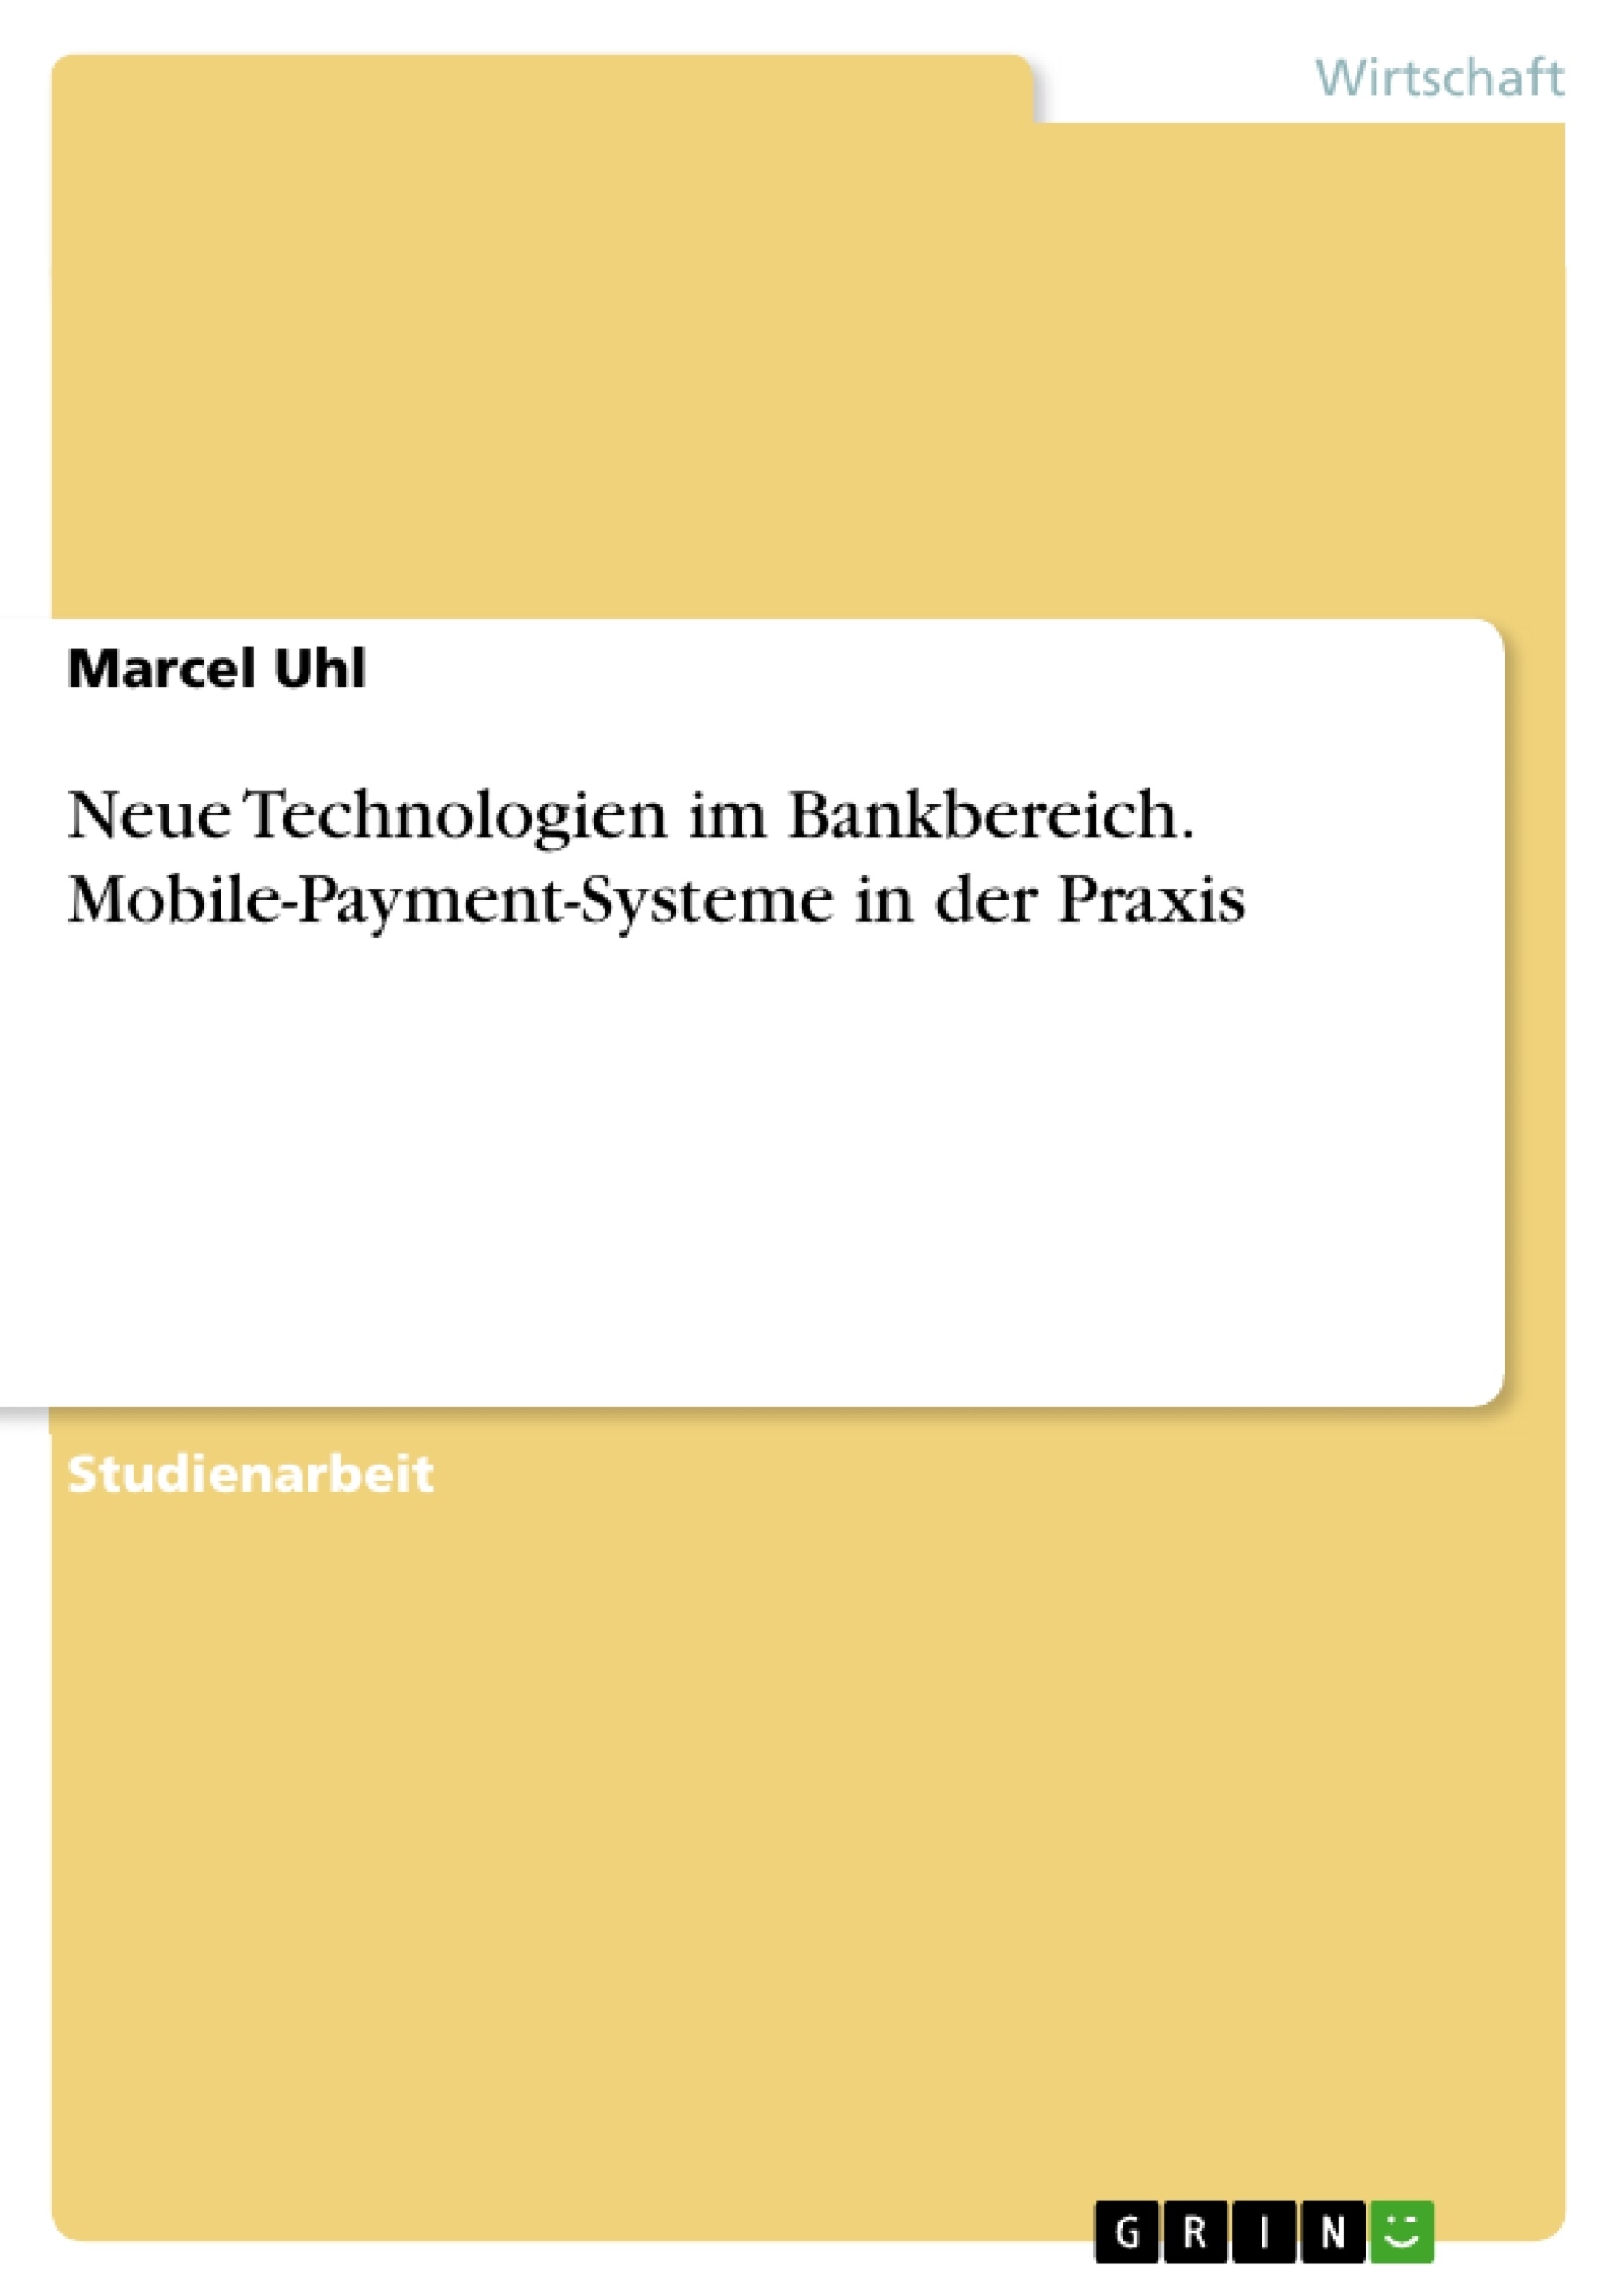 Titel: Neue Technologien im Bankbereich. Mobile-Payment-Systeme in der Praxis